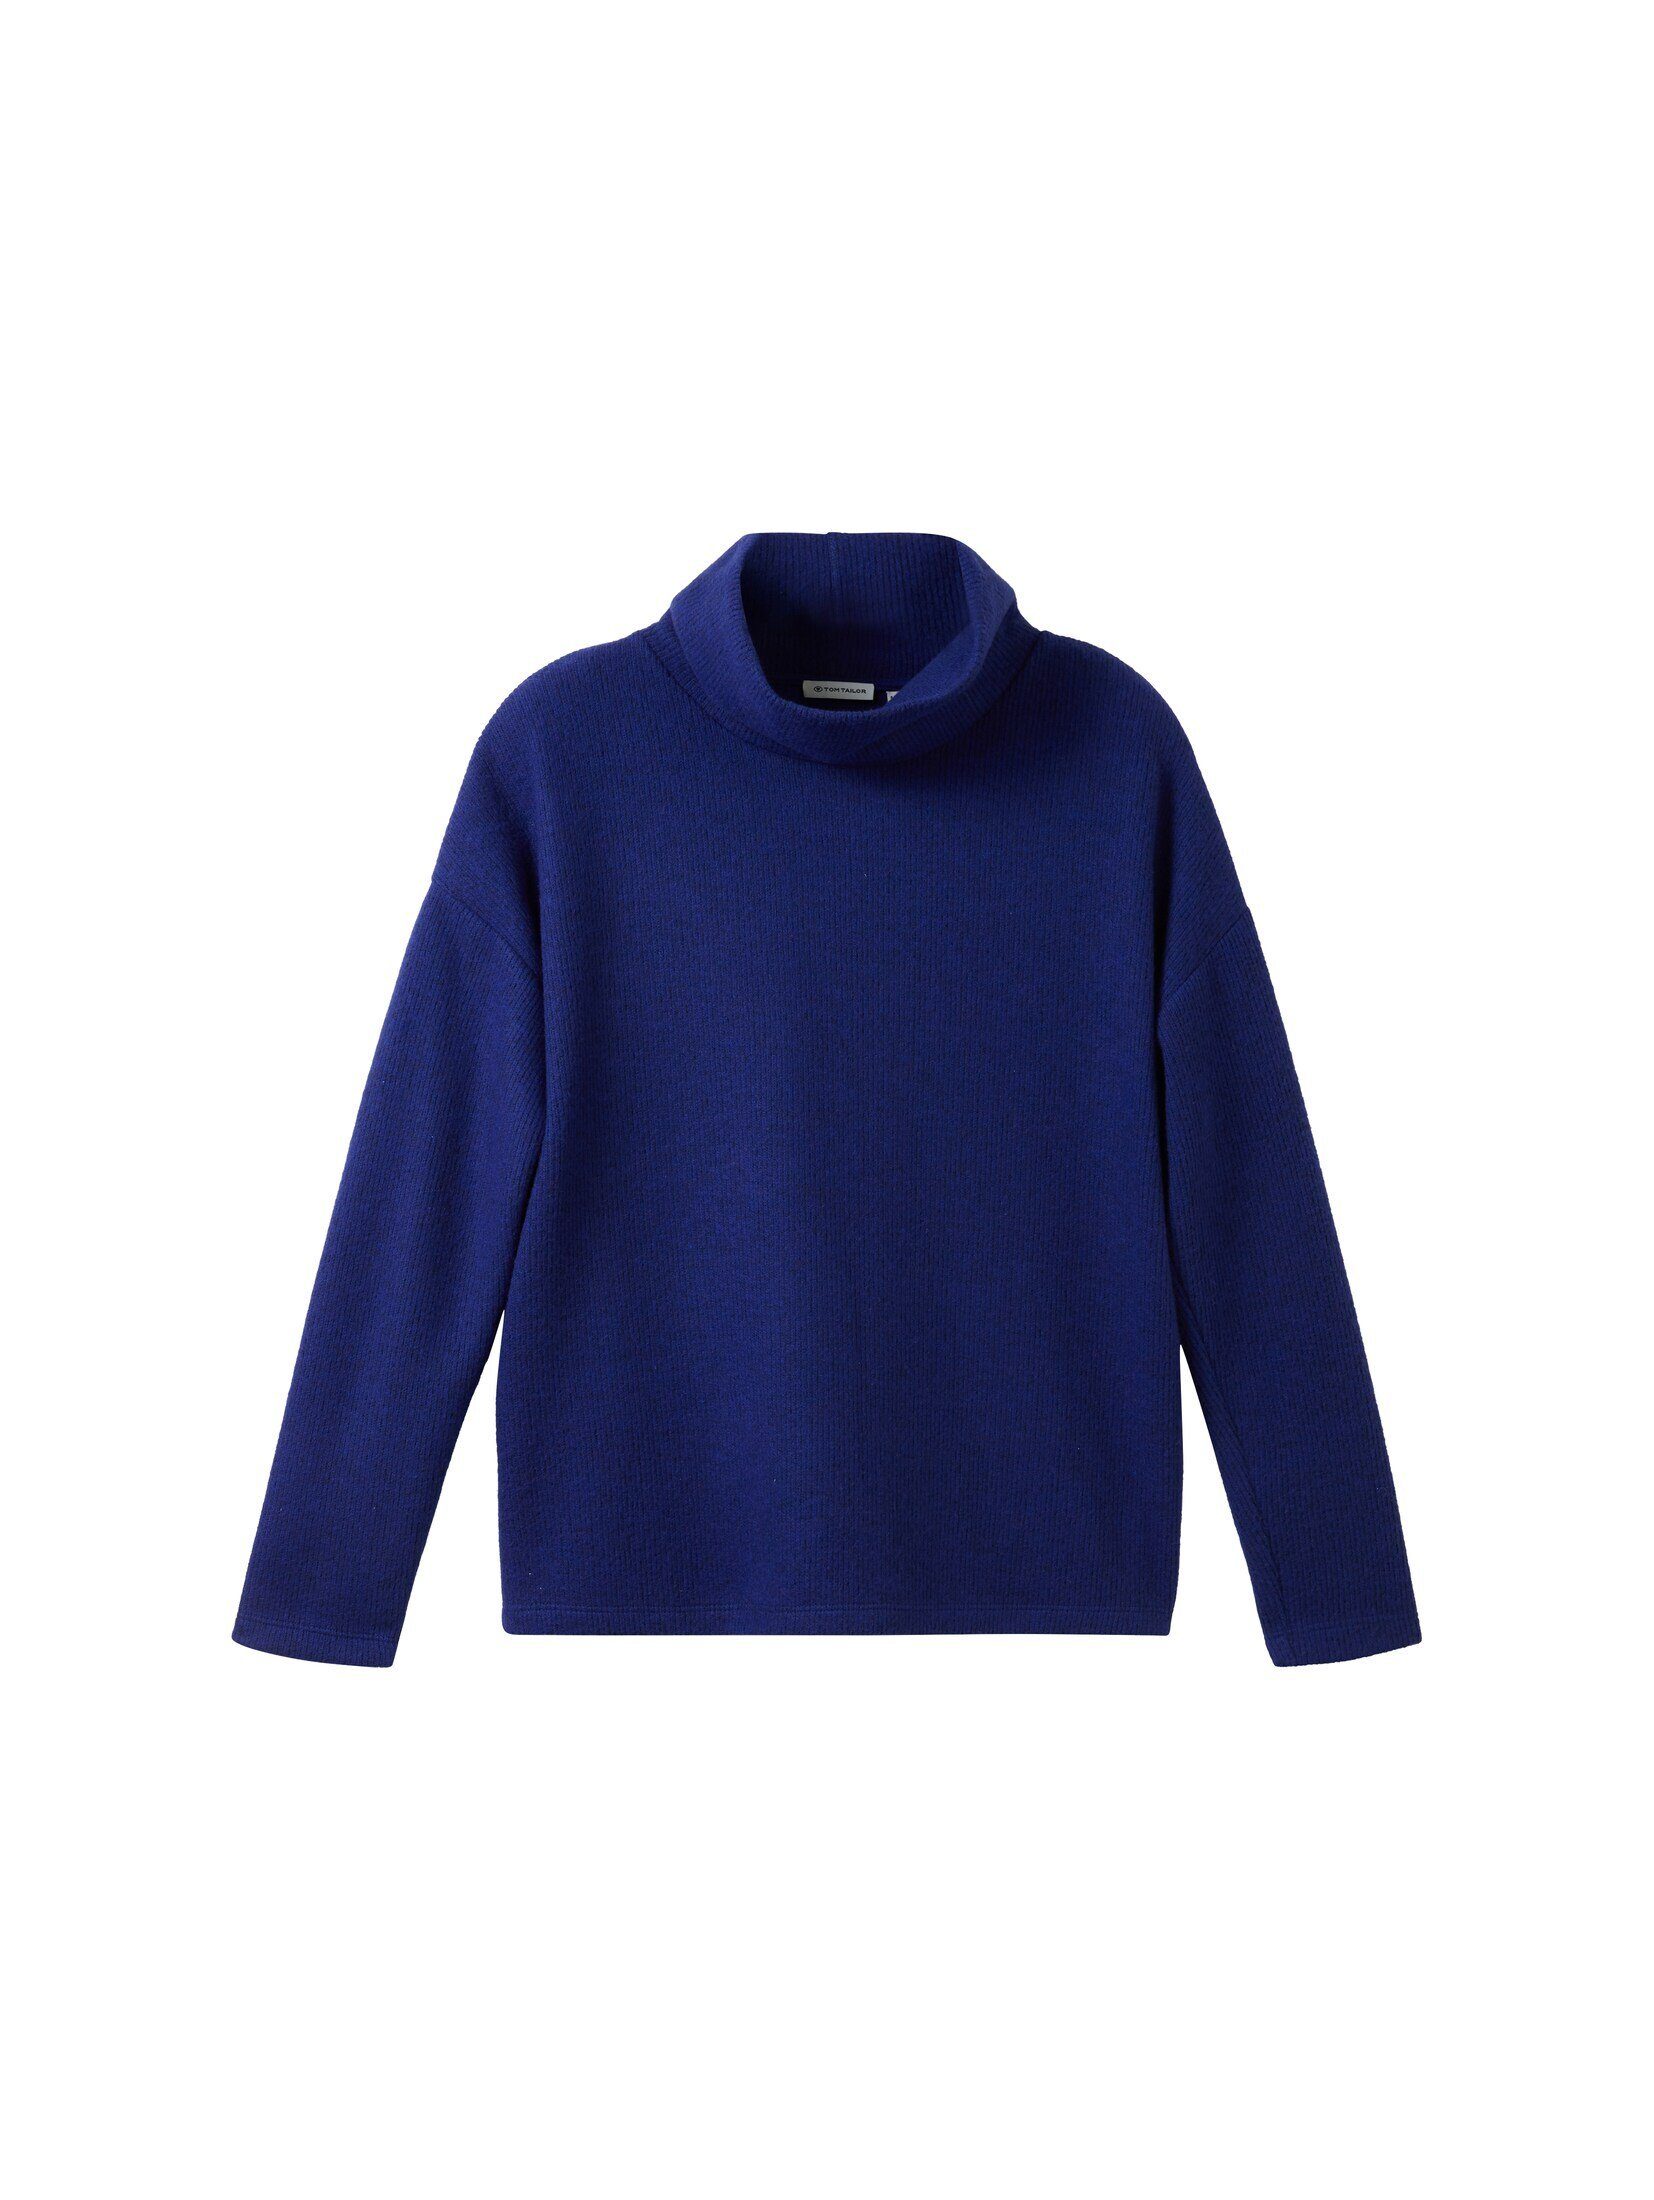 Rollkragen TOM TAILOR Sweatshirt Bequemes melange blue mit crest Sweatshirt